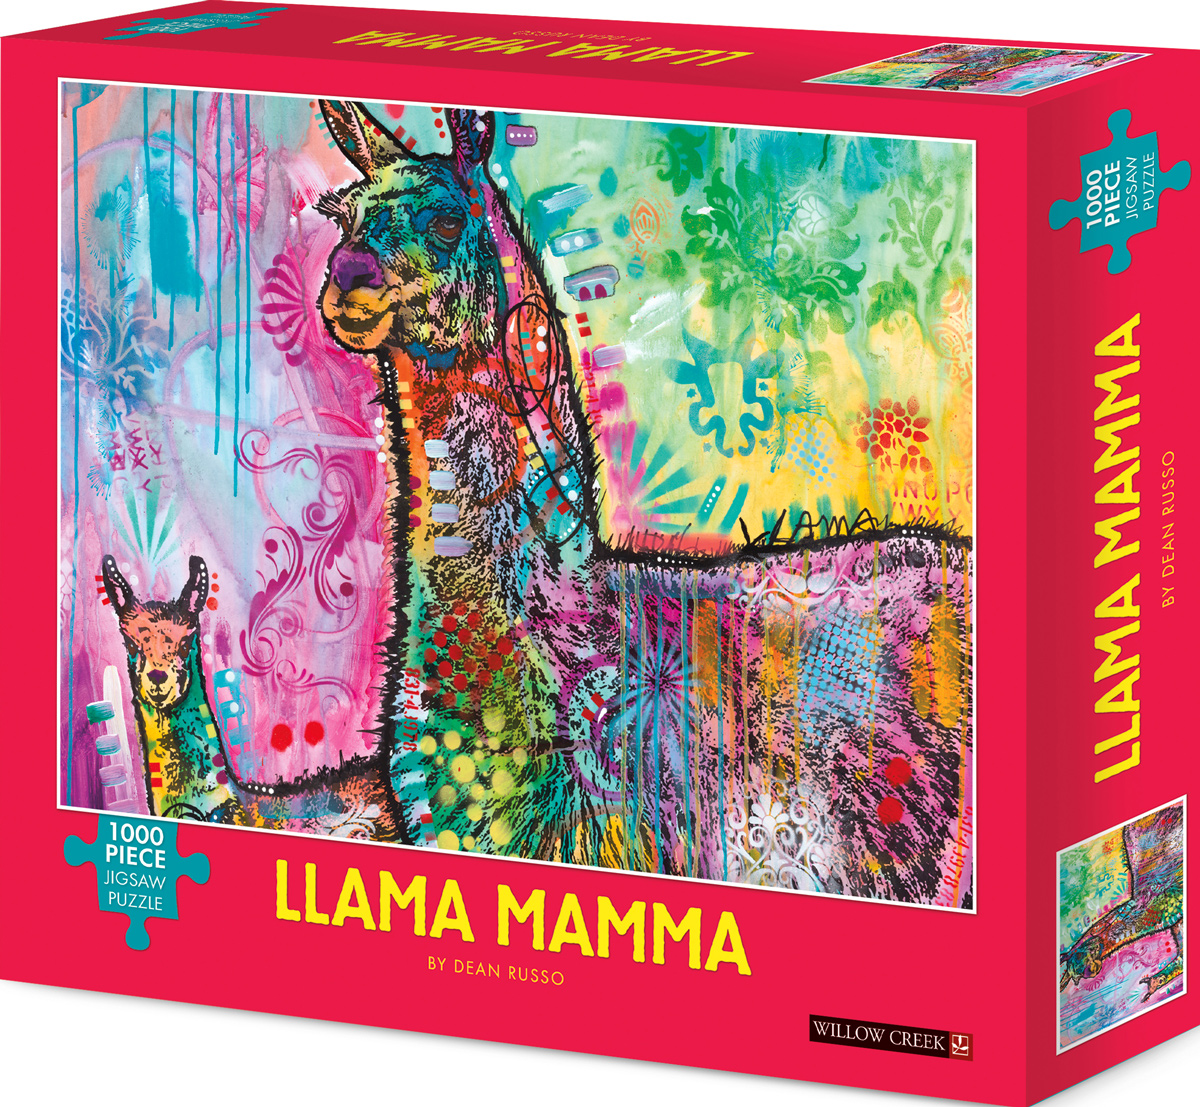 Llama Mamma